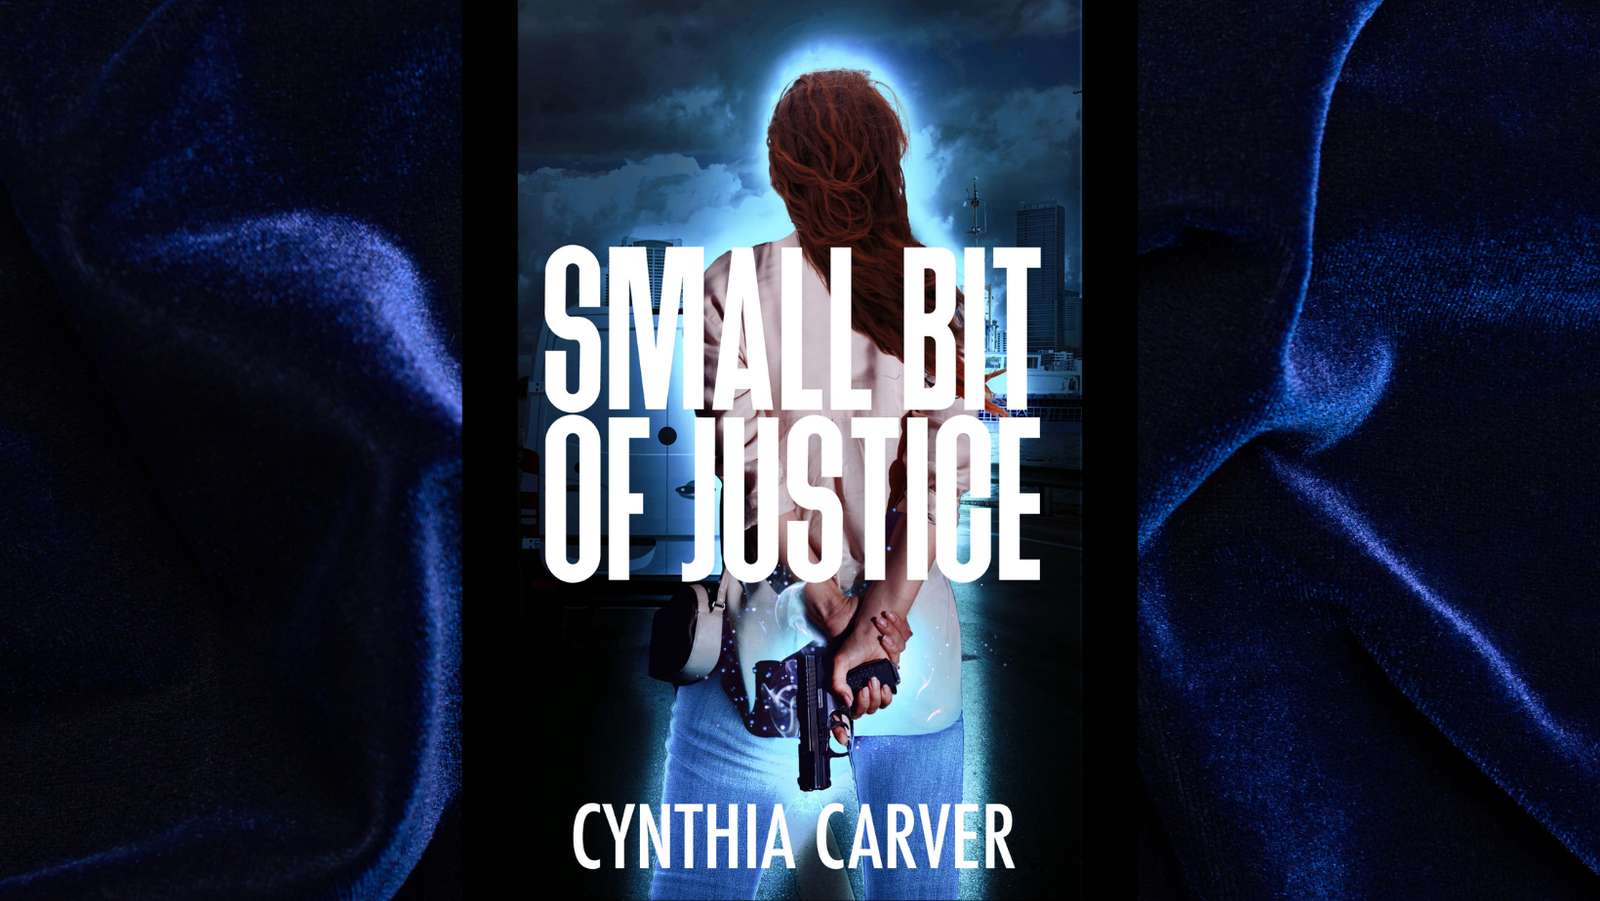 Een klein beetje gerechtigheid door Cynthia Carver online puzzel